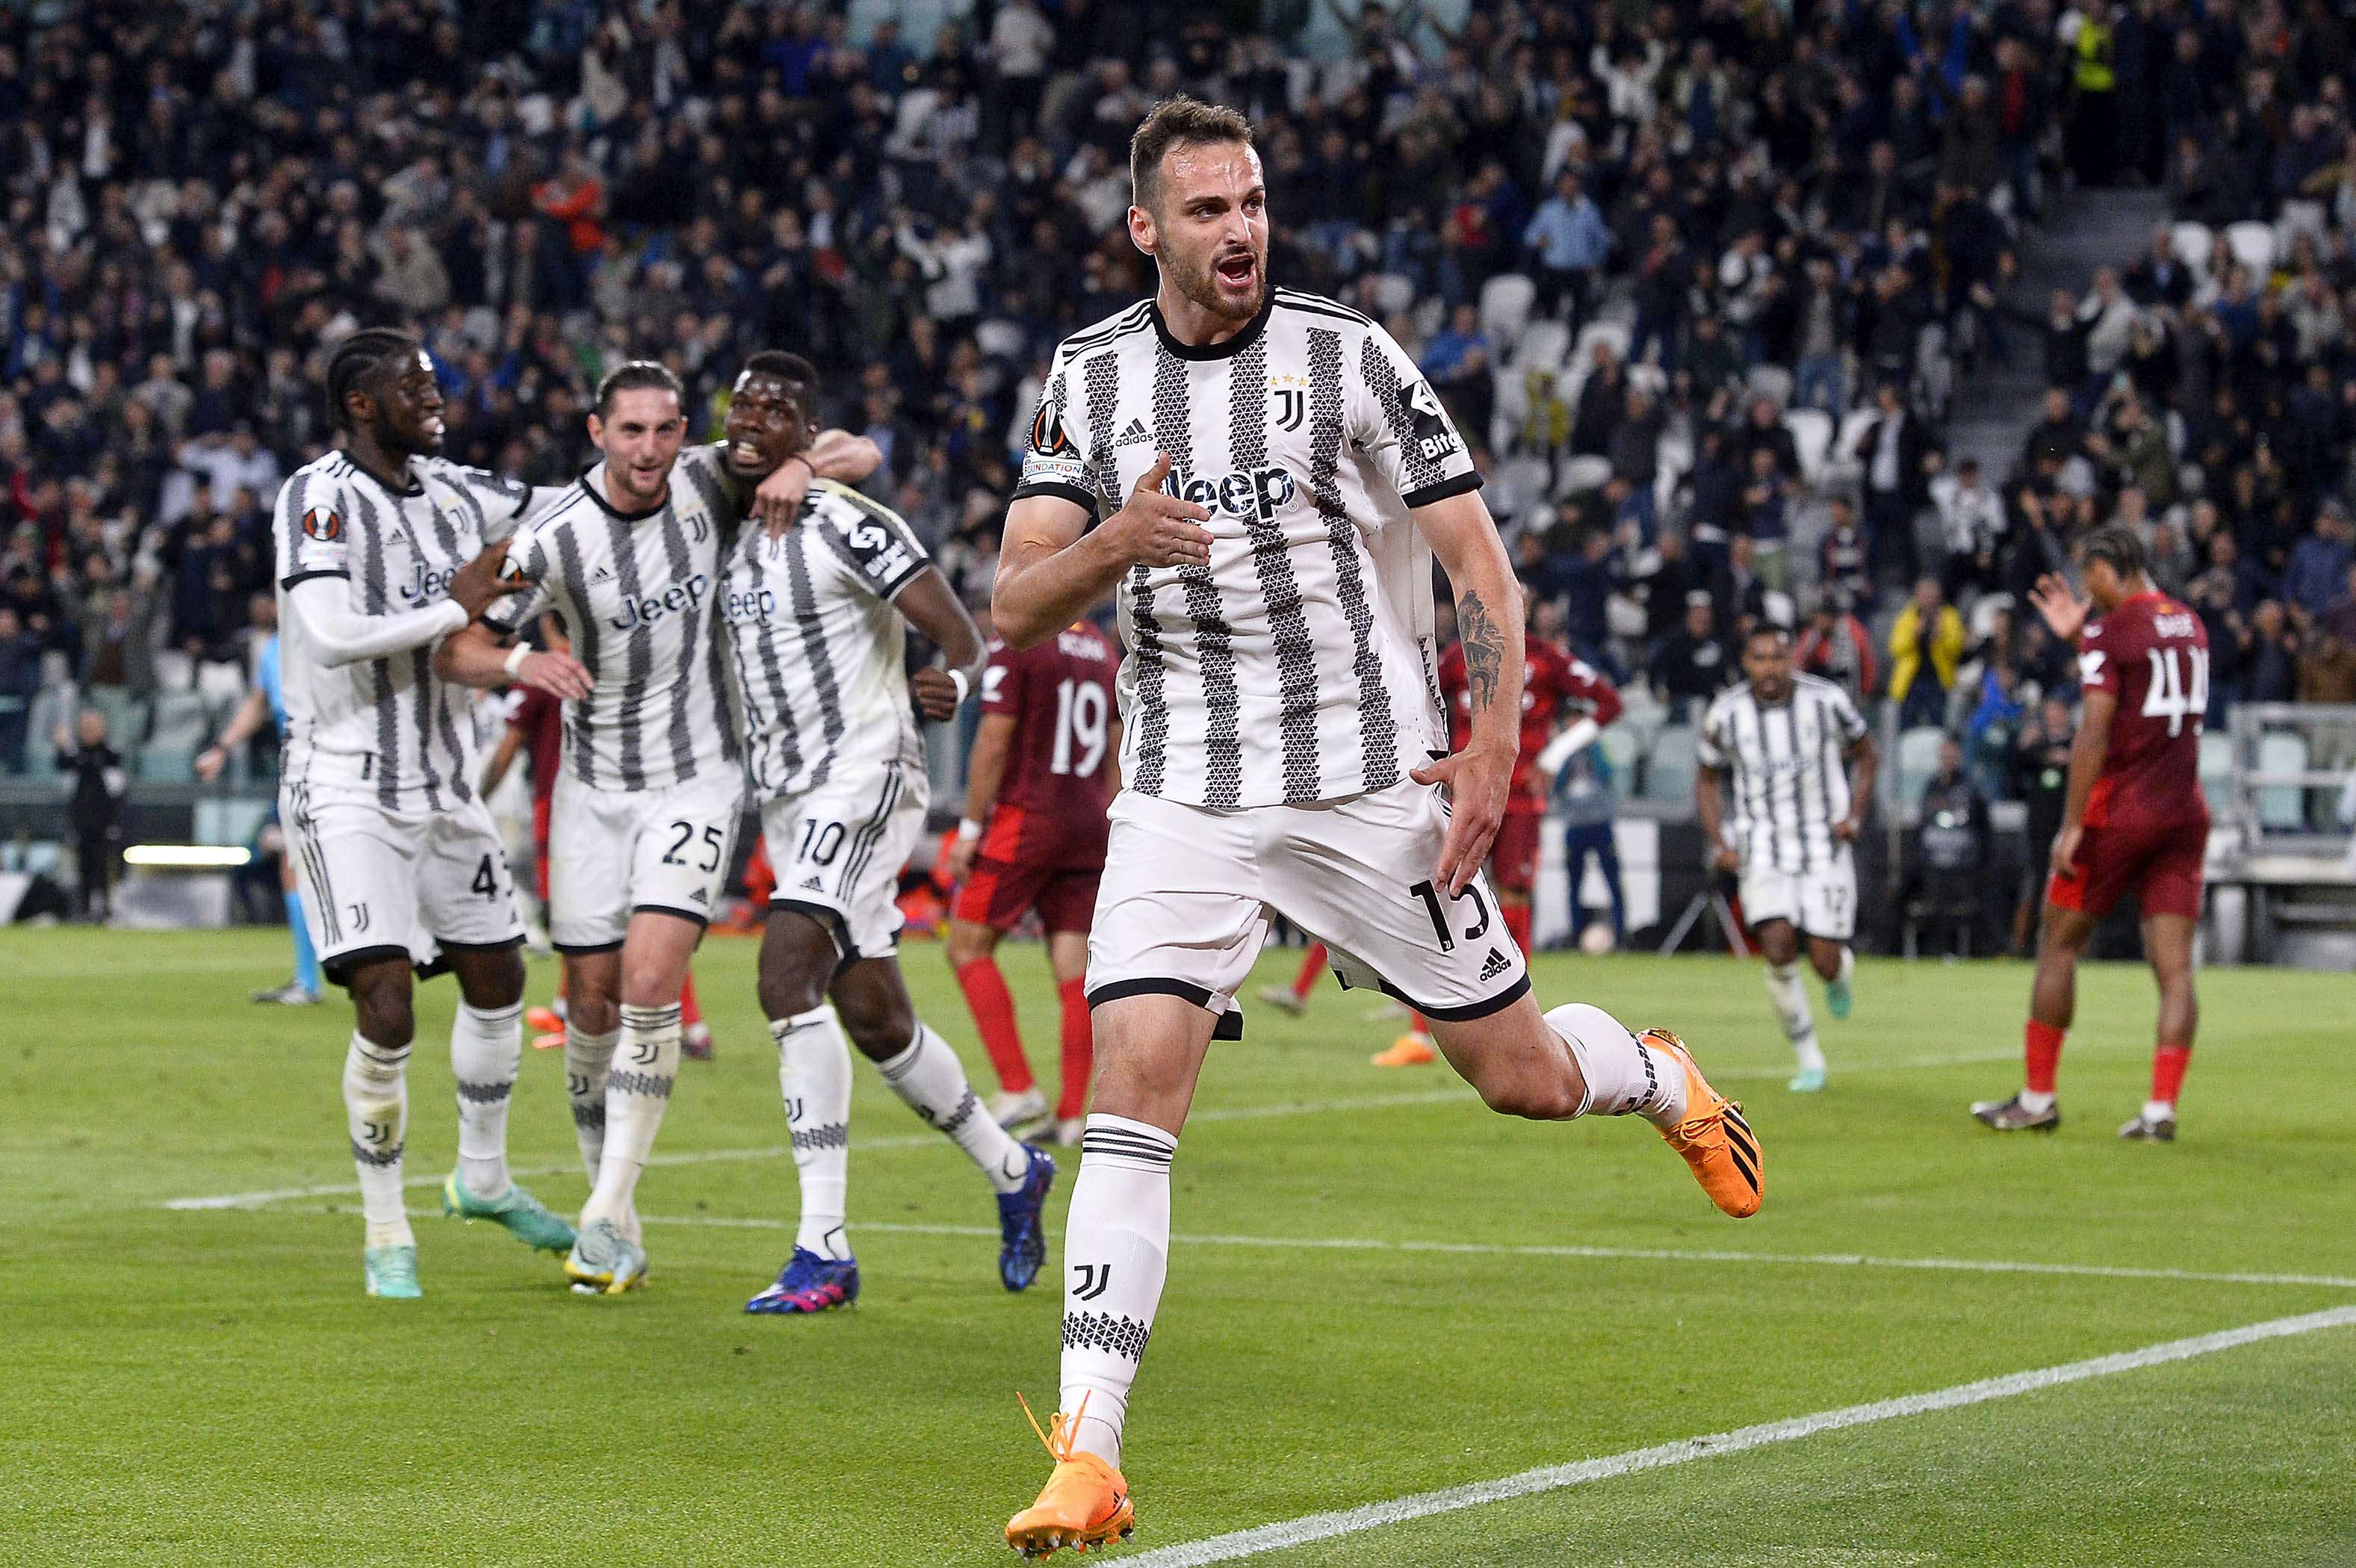 Peringkat Seri A Setelah Juventus Disanksi: Lazio, Inter Milan, AC Milan, Atalanta, dan Roma Terkerek